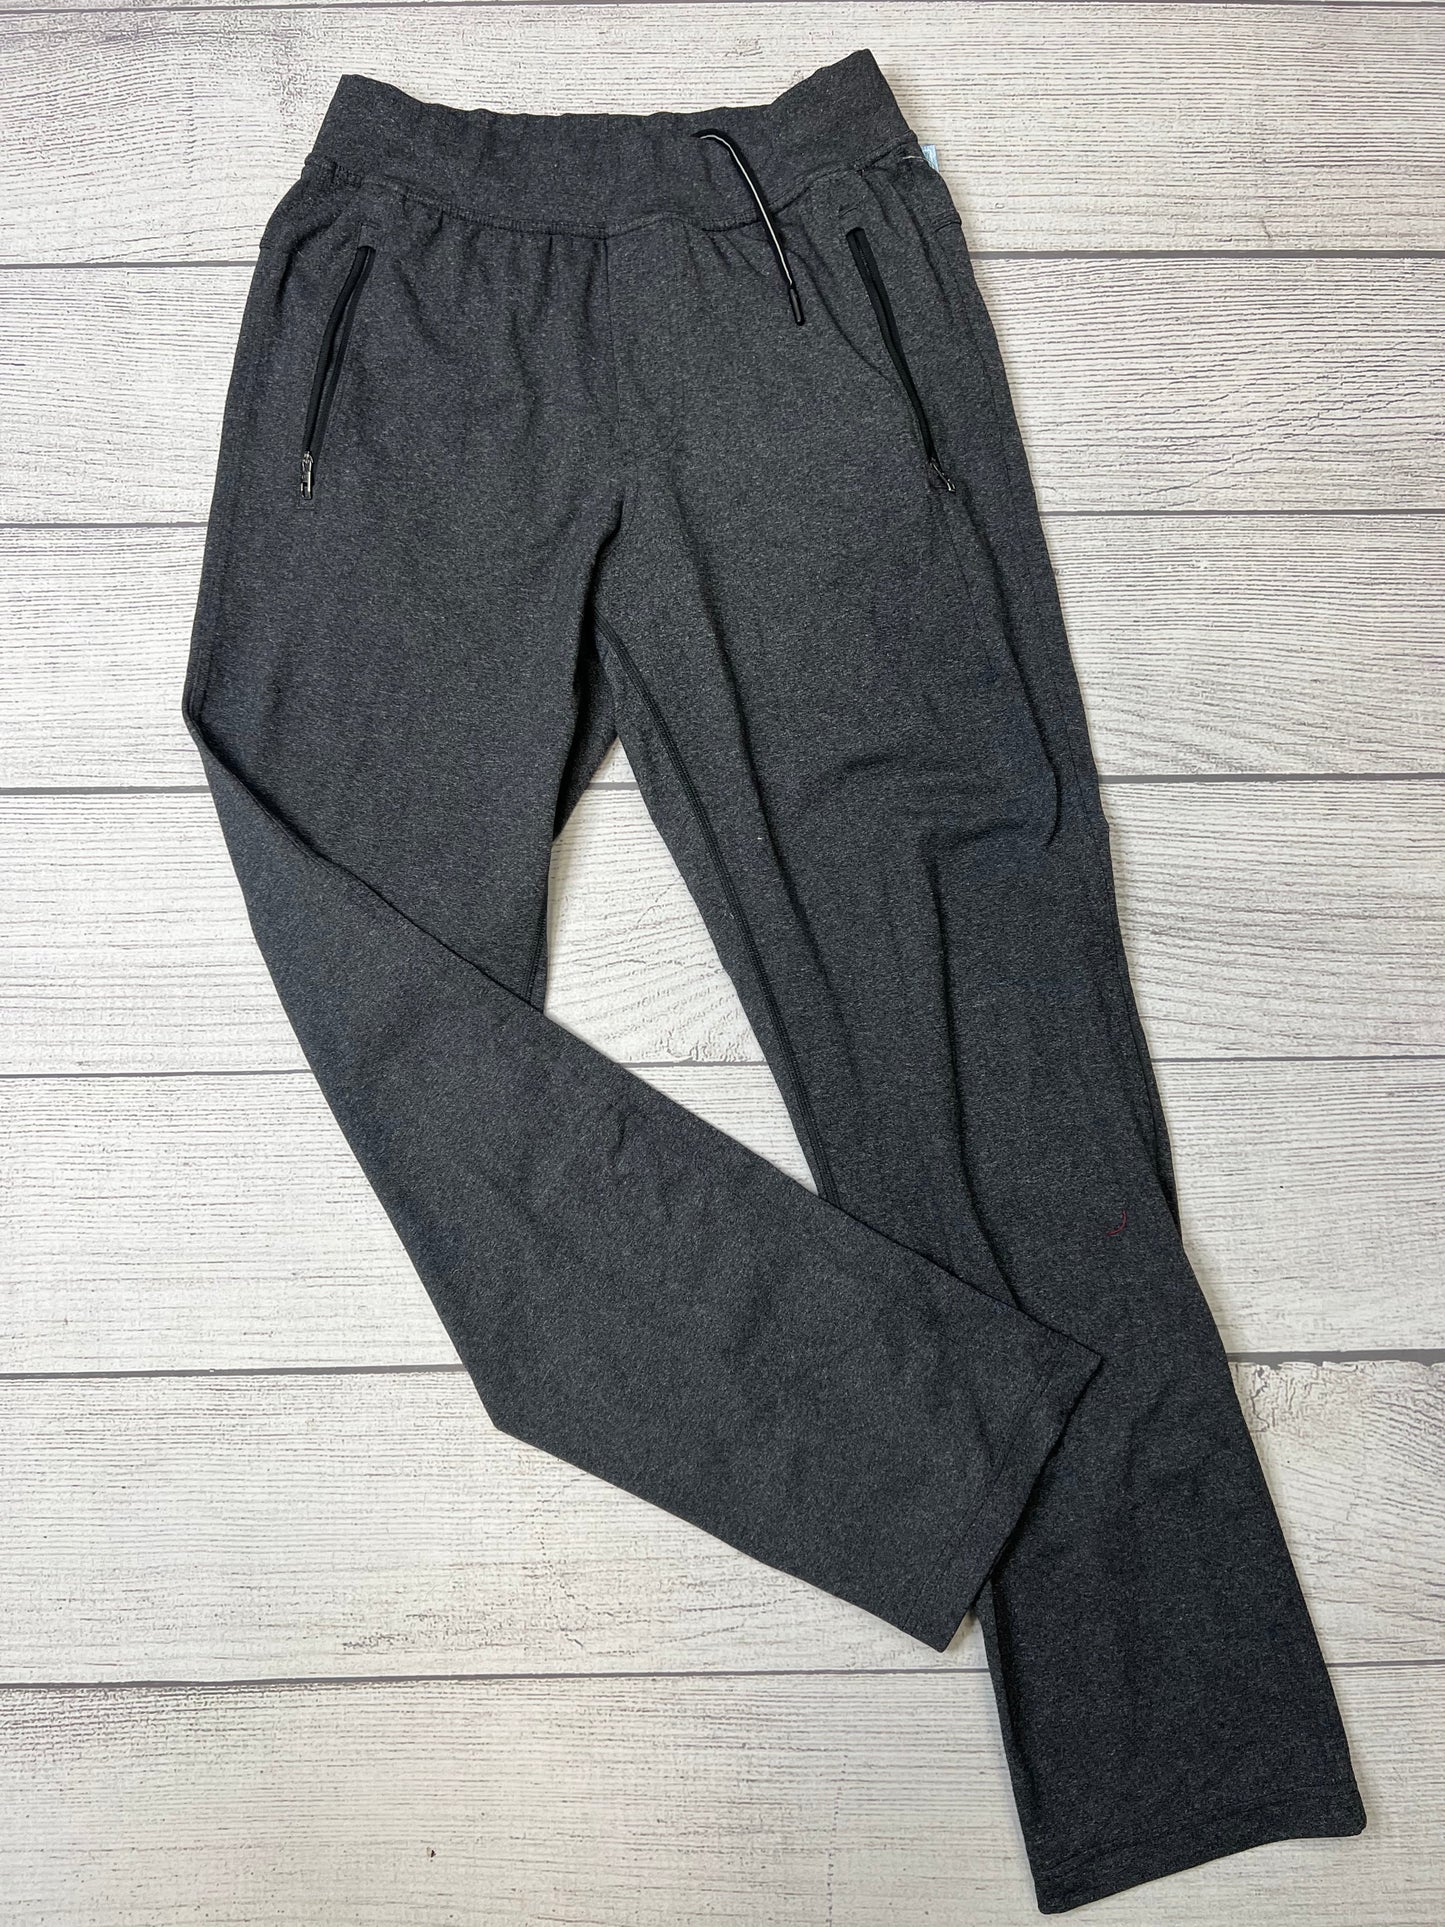 Grey Athletic Pants Lululemon, Size M